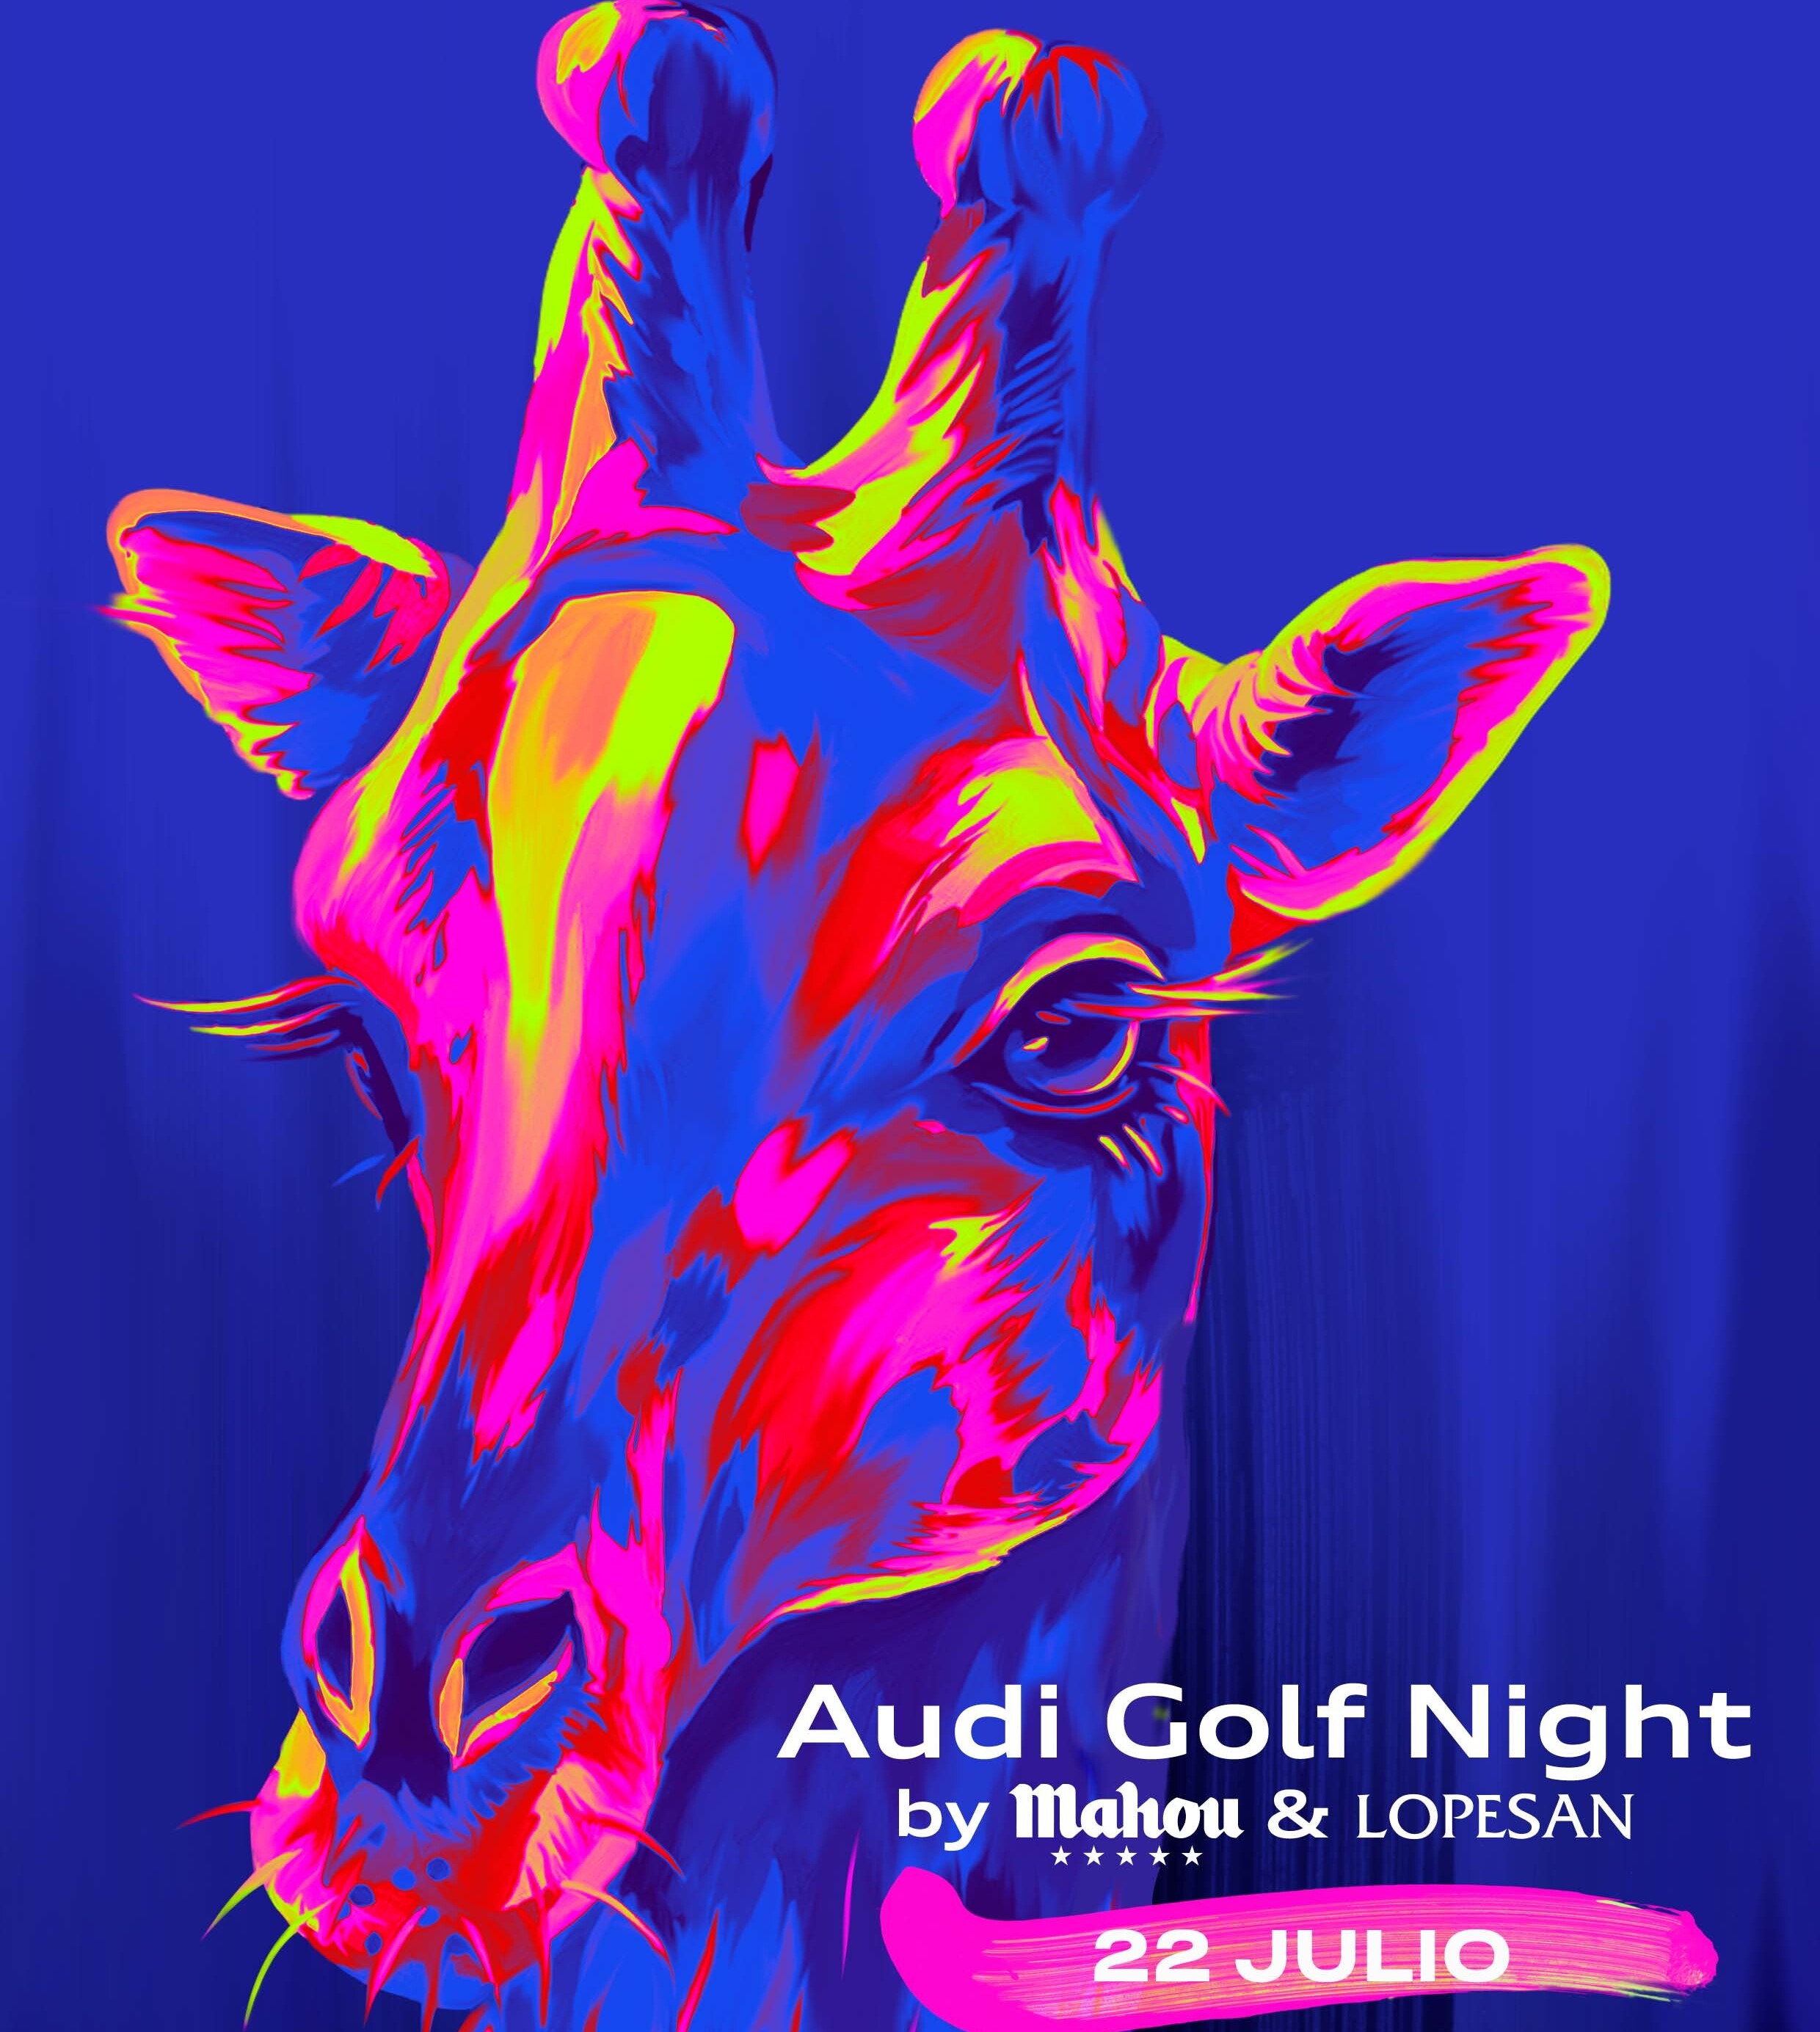 Audi Golf Night by Mahou & Lopesan